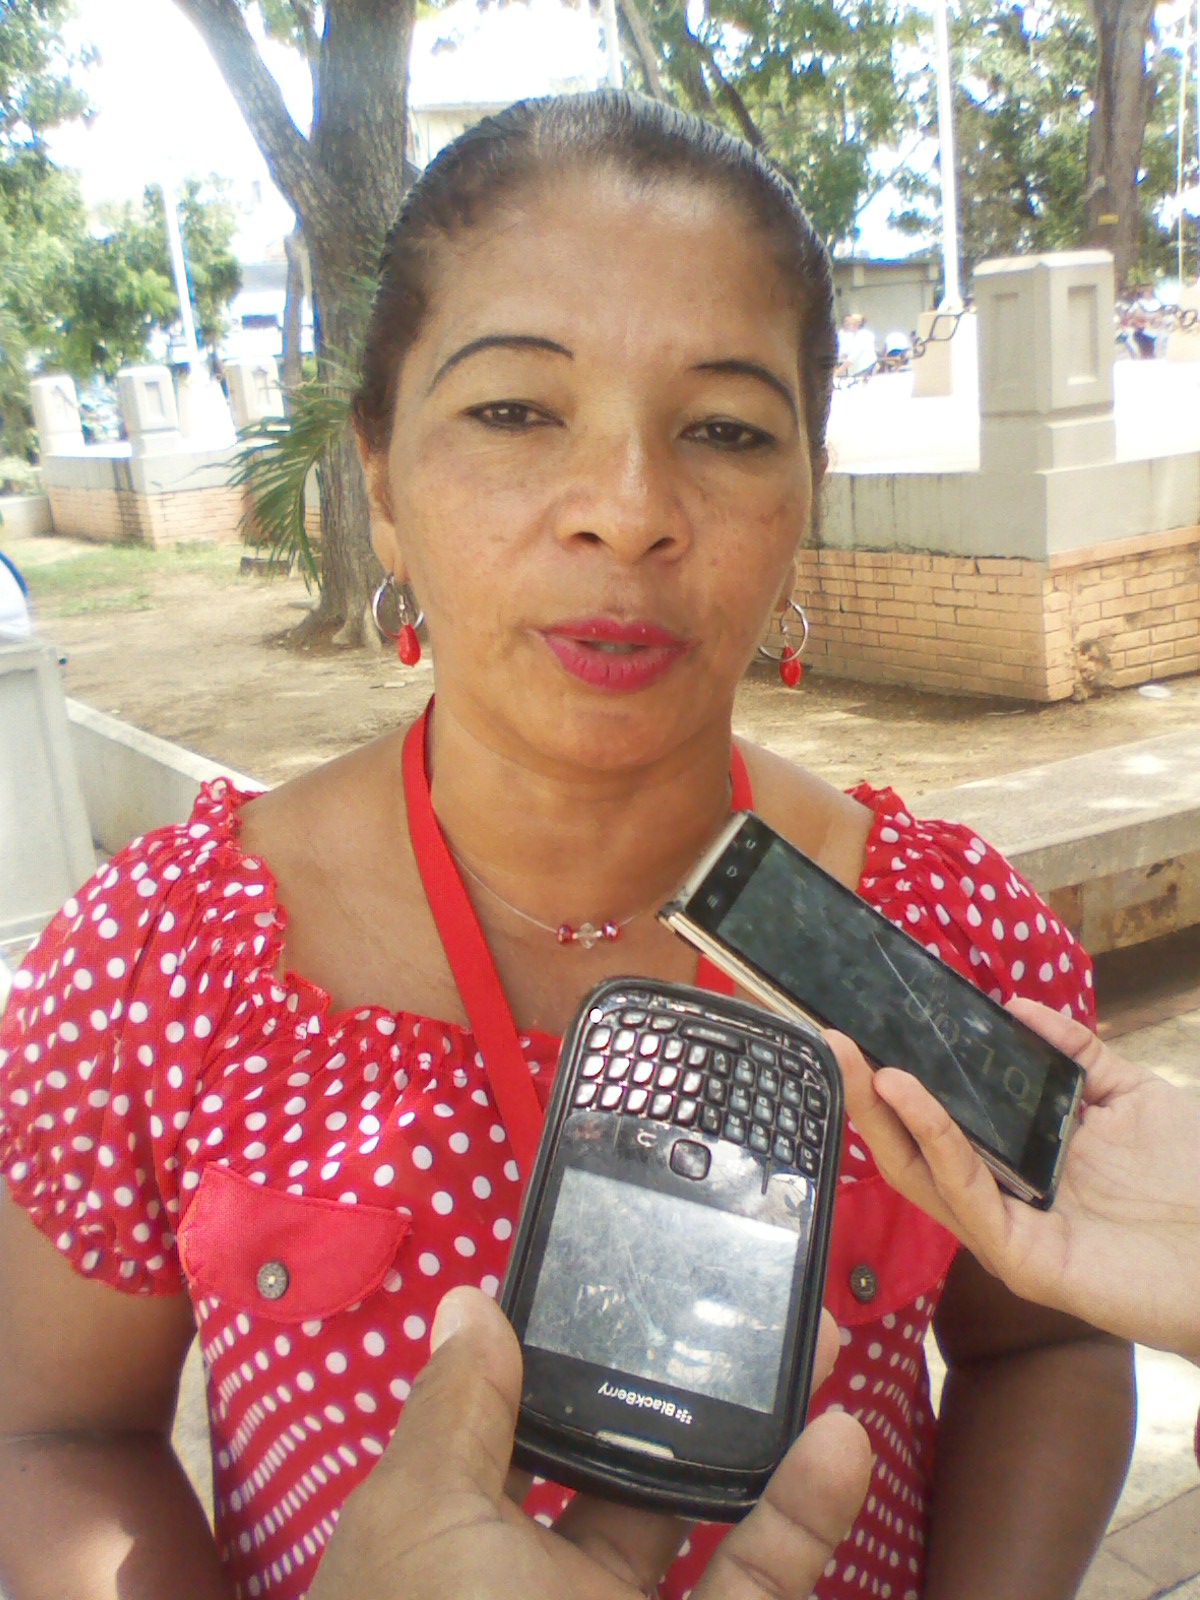 La coordinadora de cultura e interculturalidad del Municipio Bolivariano número 3 Yanira Farías al momento de ofrecer la información